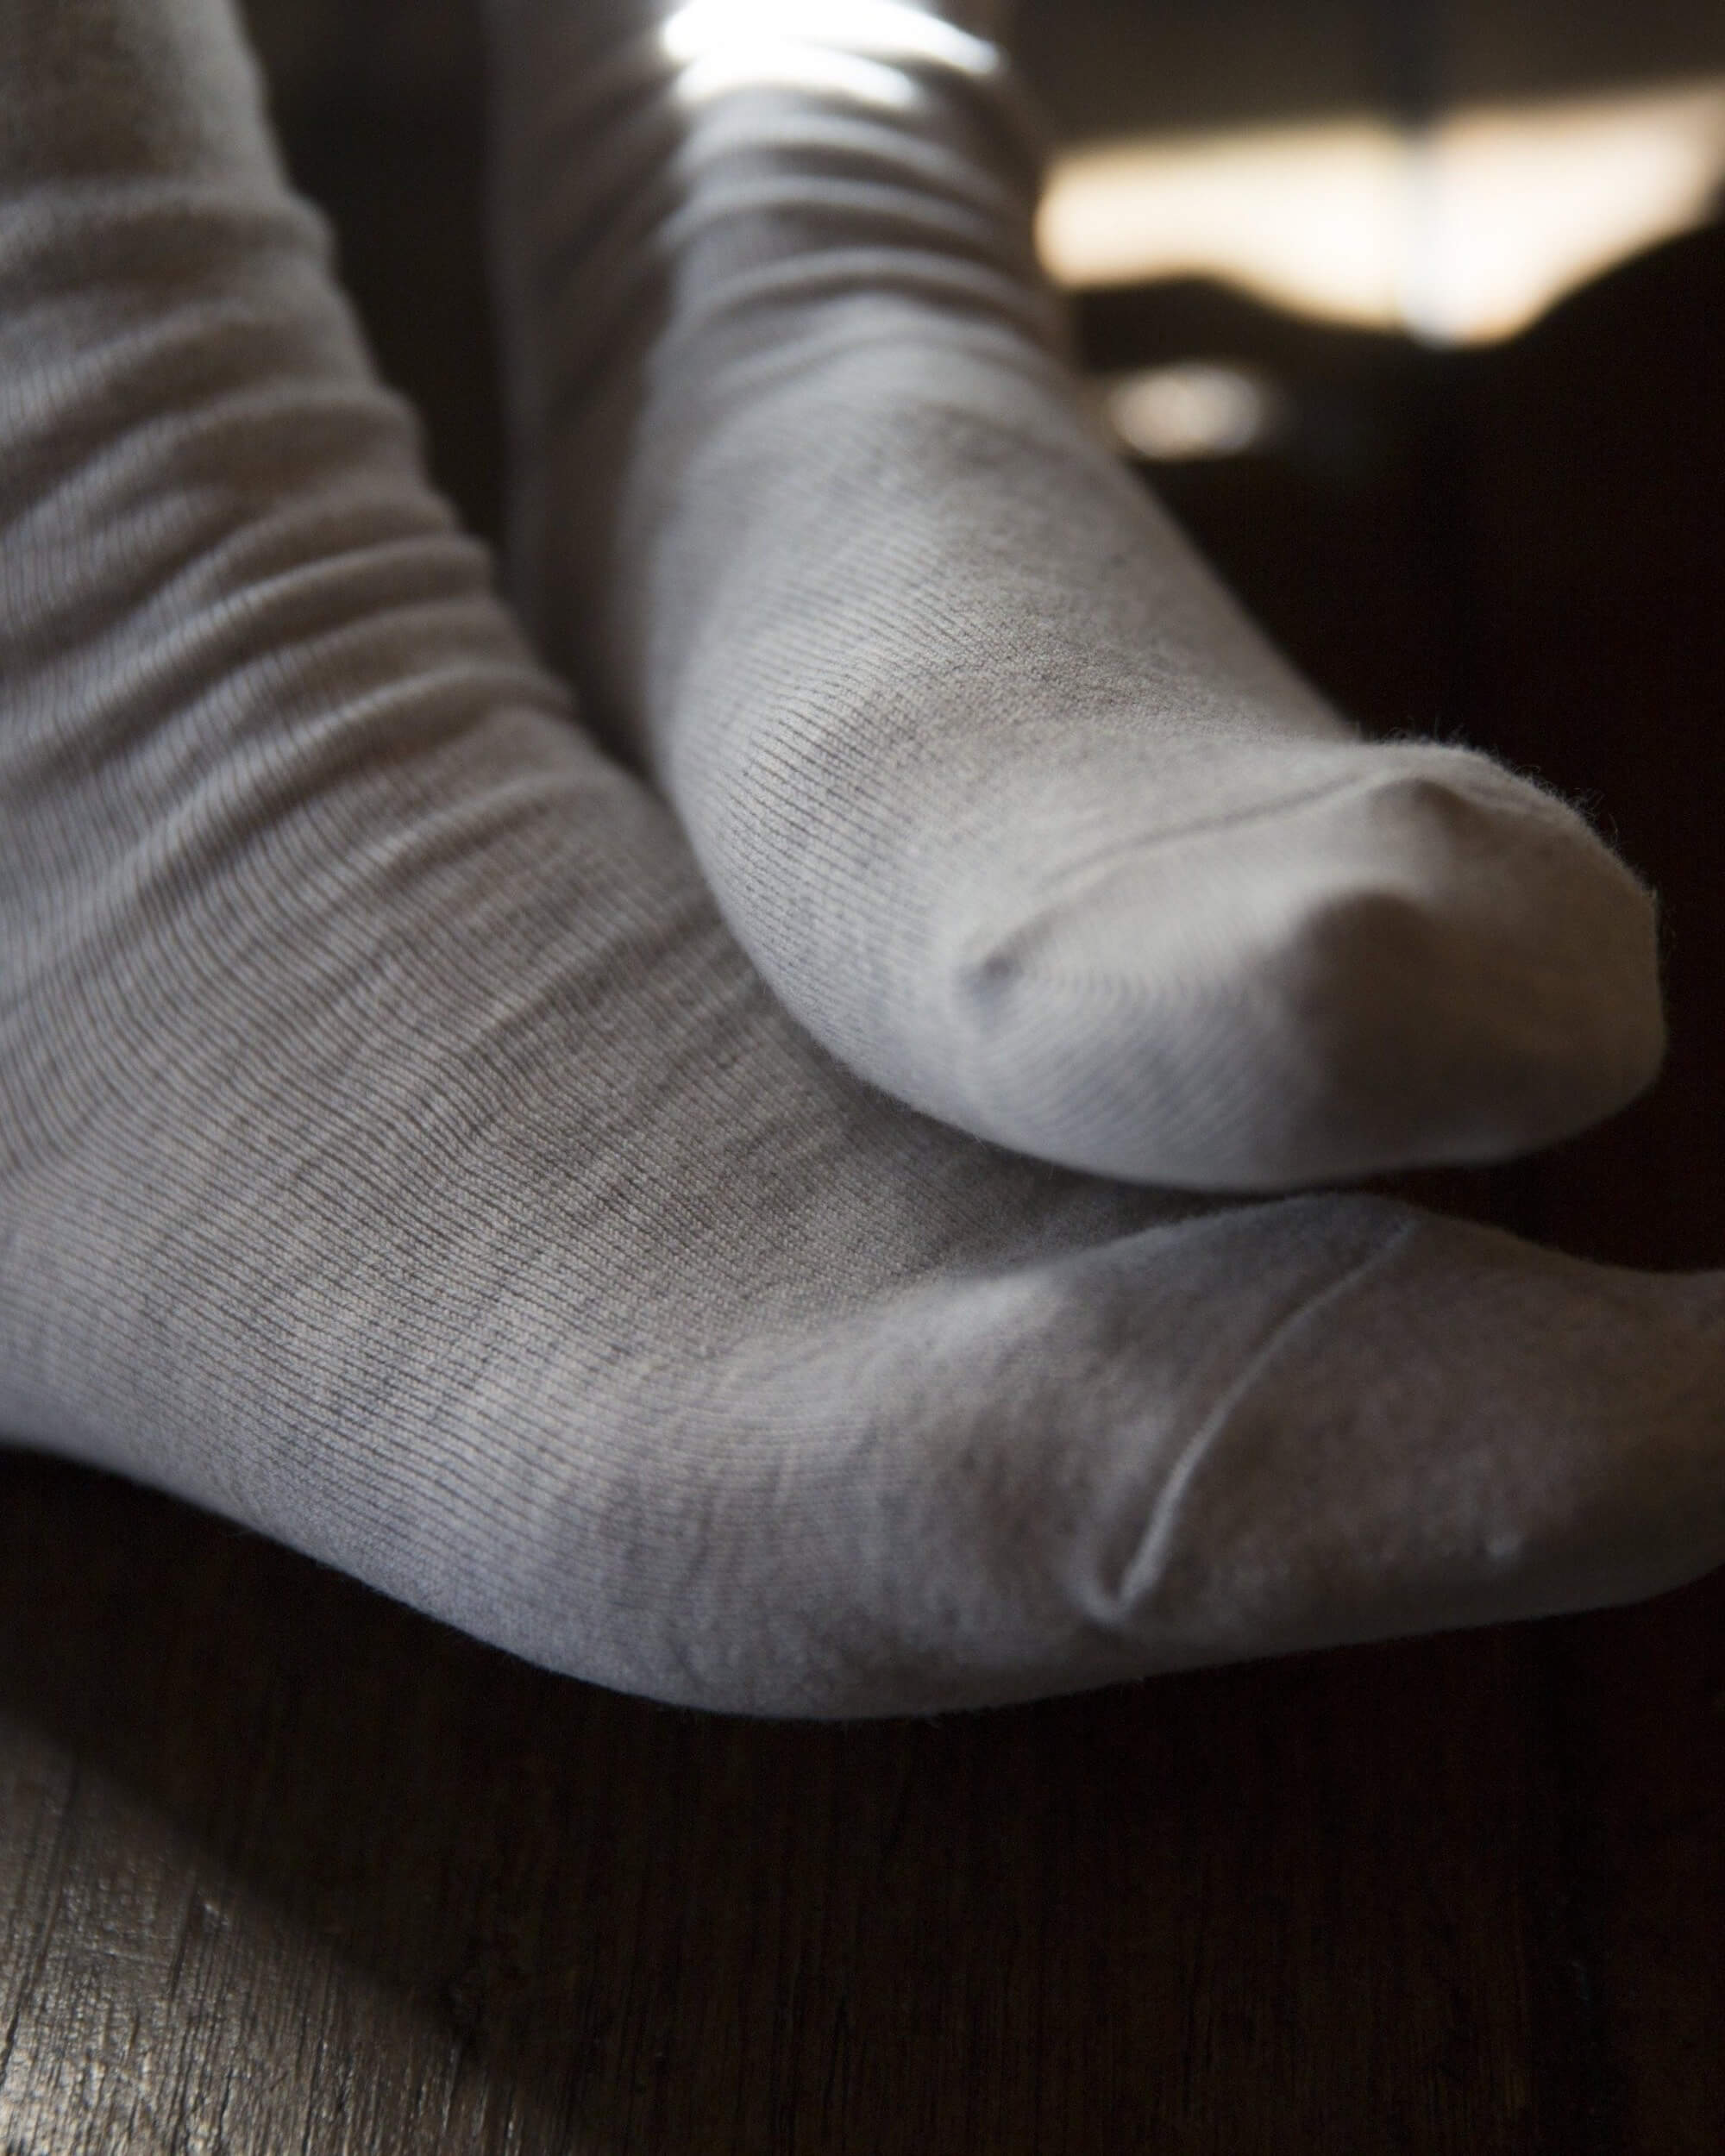 nishiguchi kutsushita : praha cashmere cotton socks